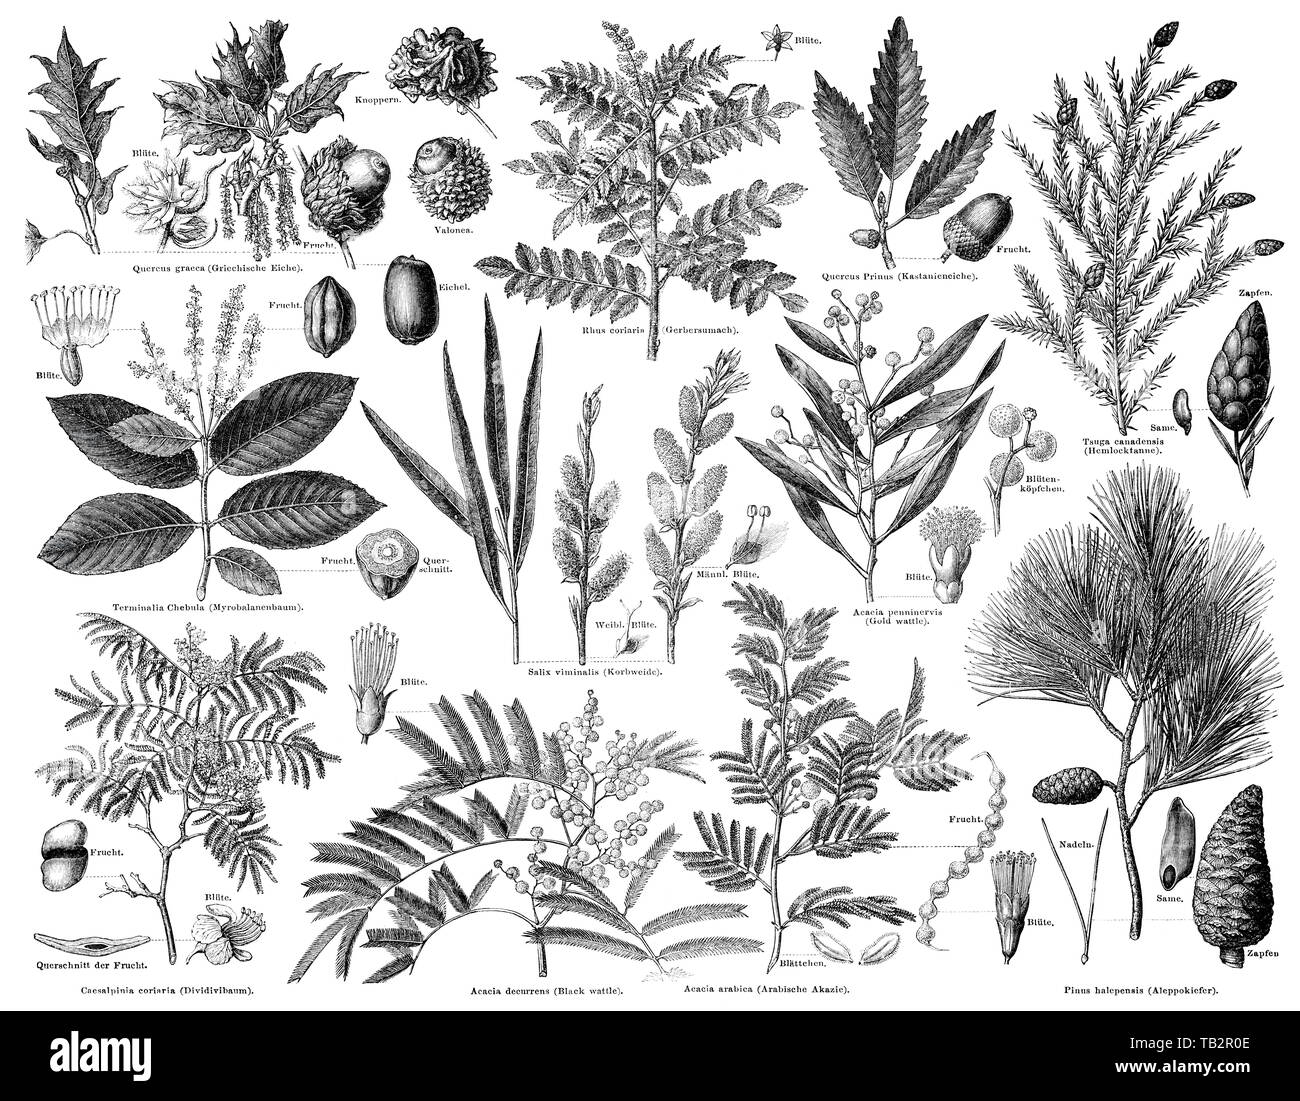 tanning agent plants, Pflanzen zur Gerbstoffgewinnung Stock Photo - Alamy